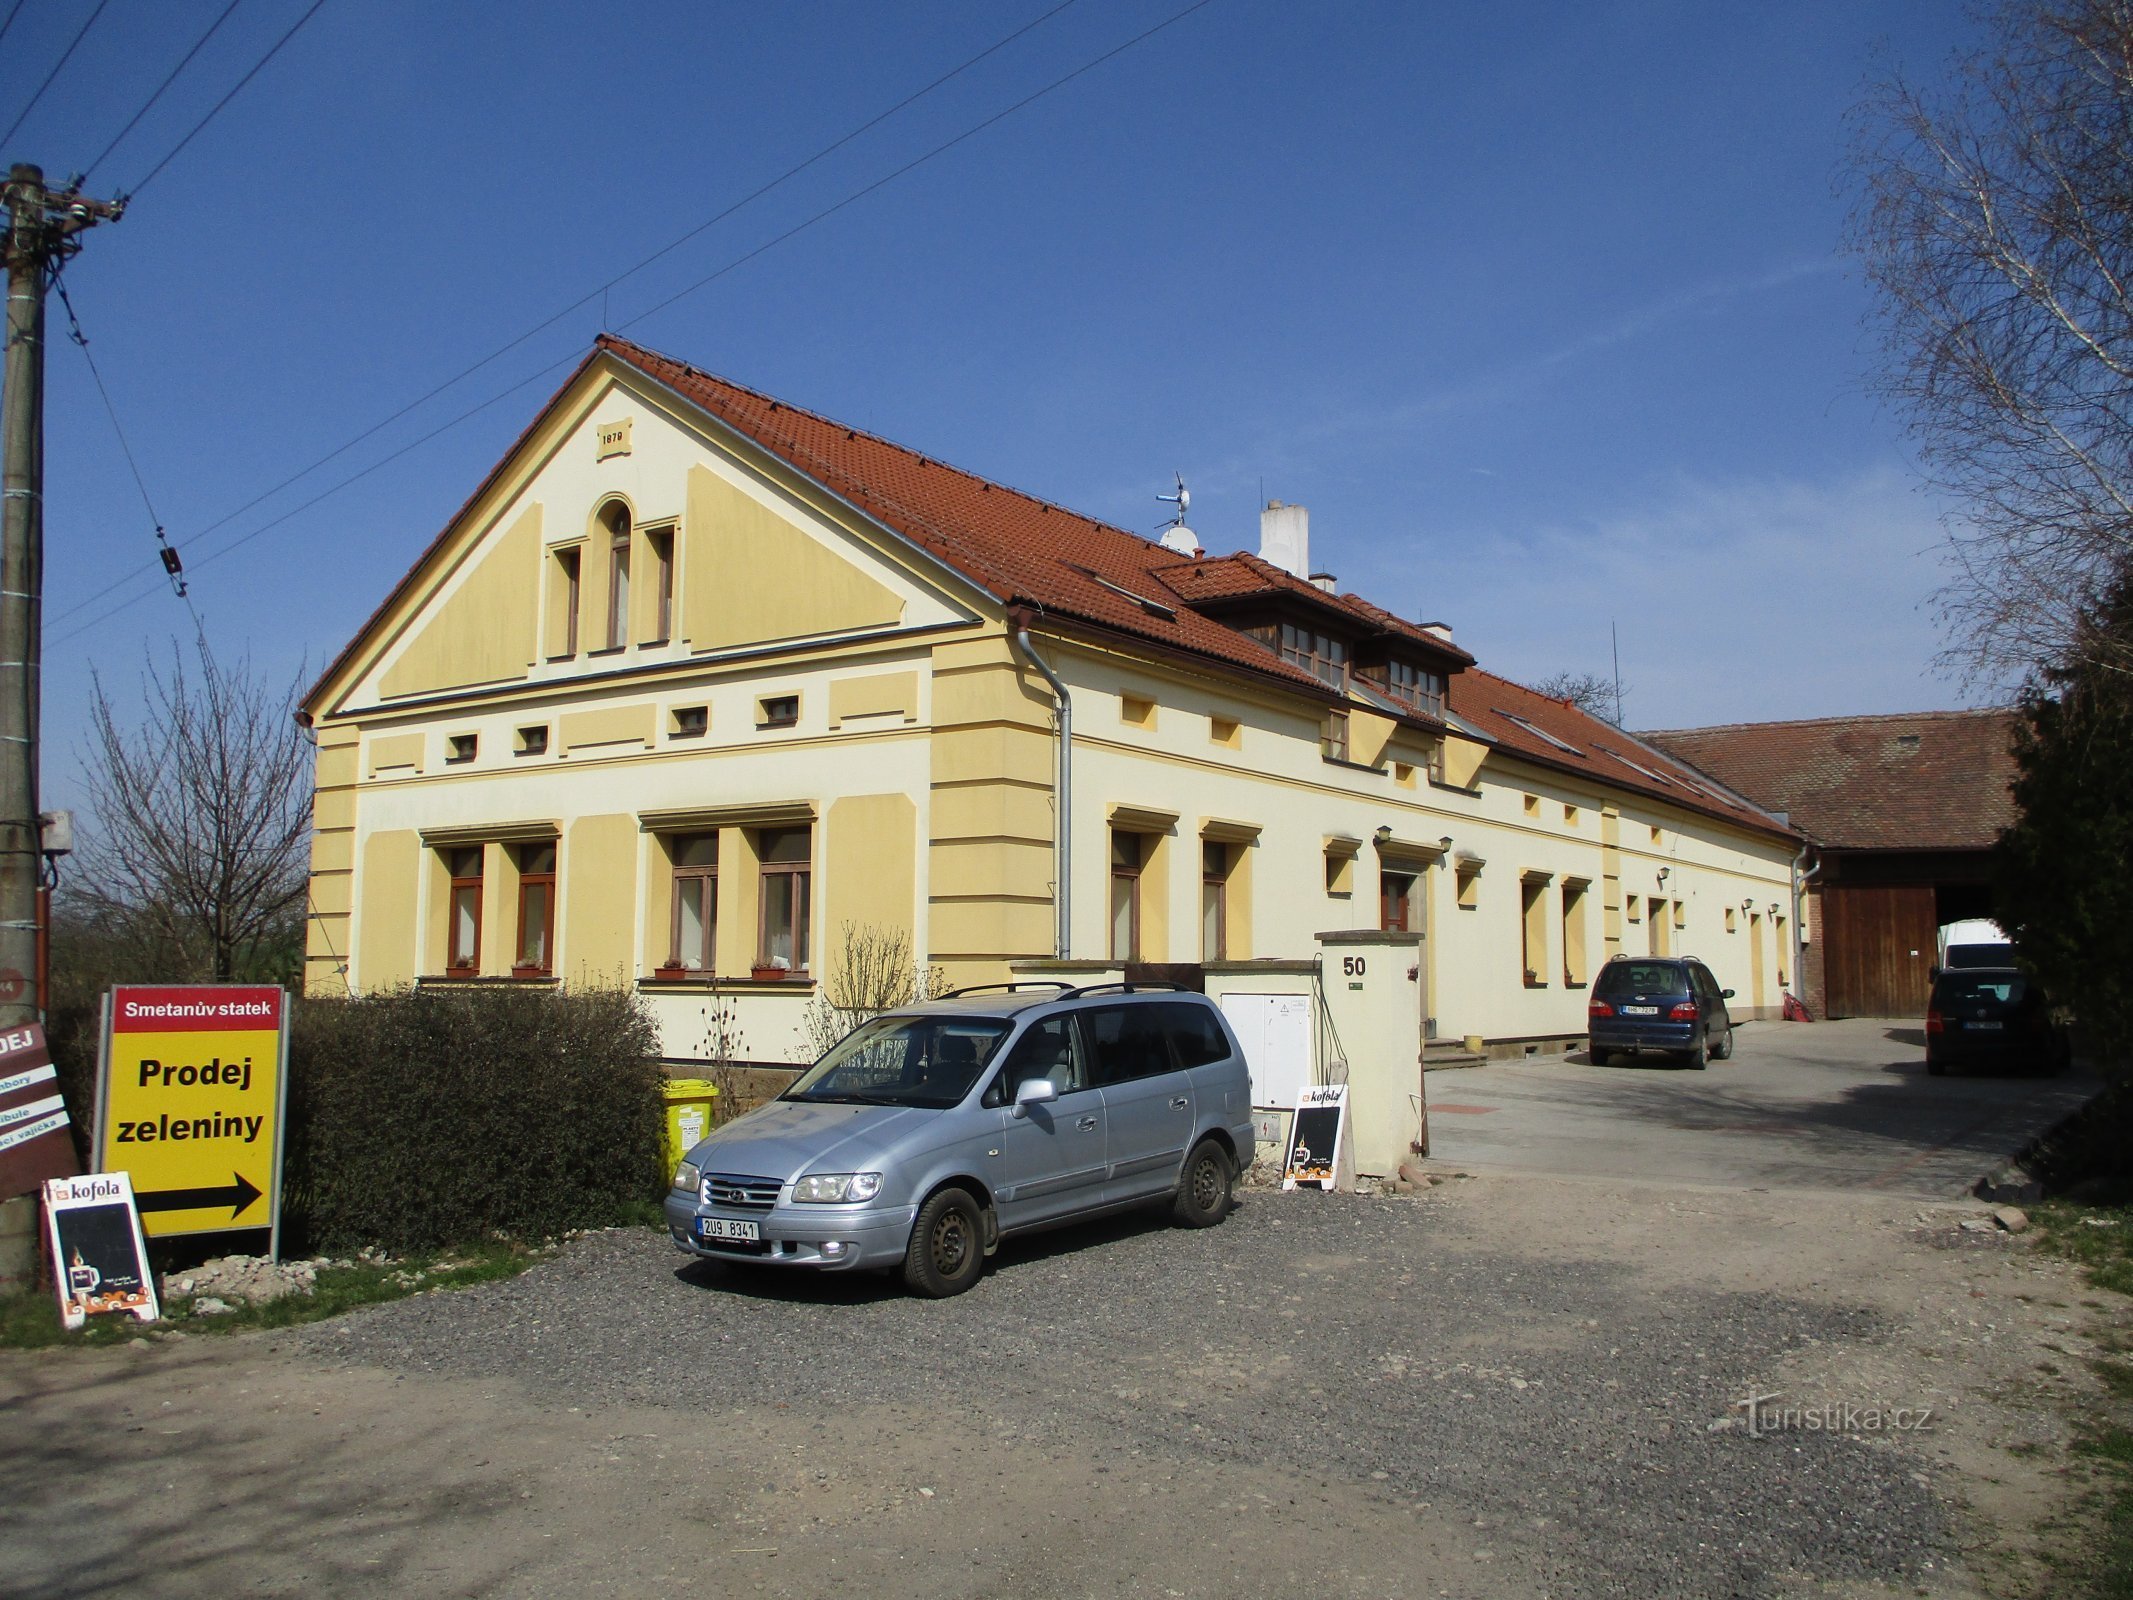 Klacovská nr 50 (Hradec Králové)